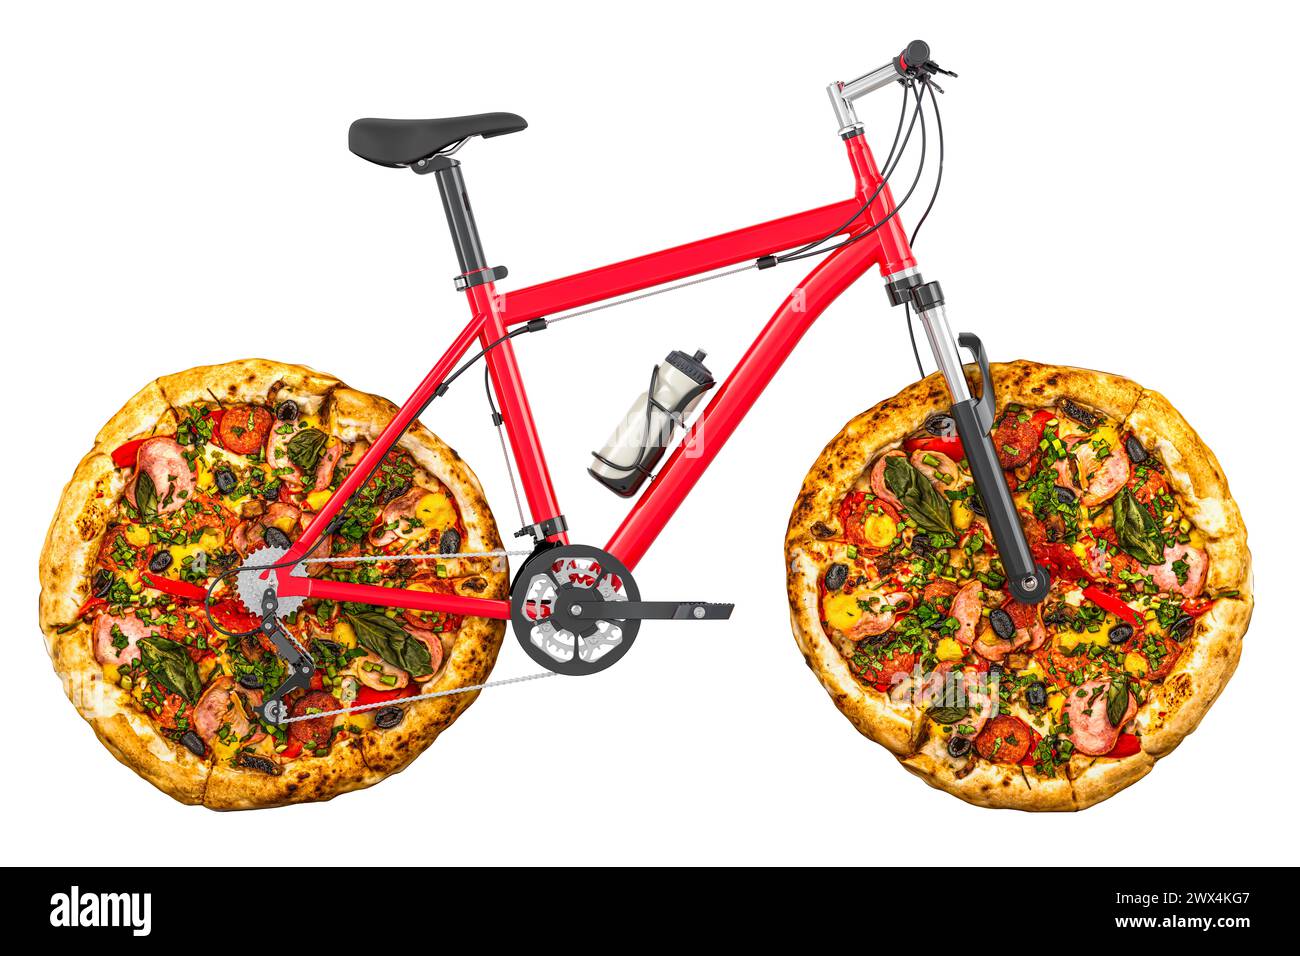 Livraison de pizza, concept. Vélo avec roues à pizza, rendu 3D isolé sur fond blanc Banque D'Images